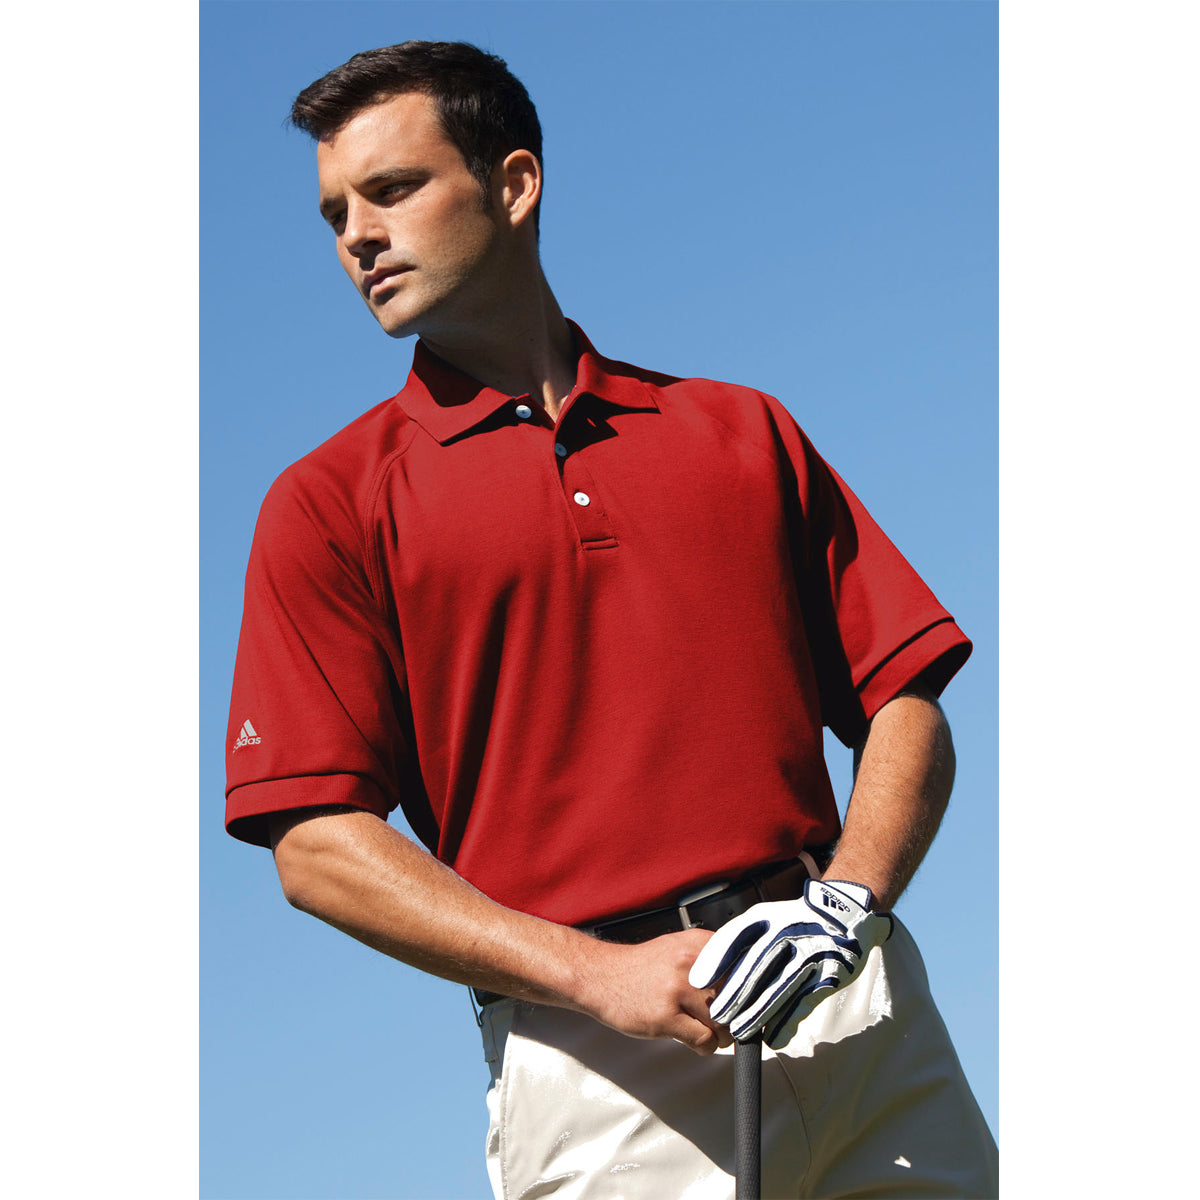 Personalized Golf Shirts